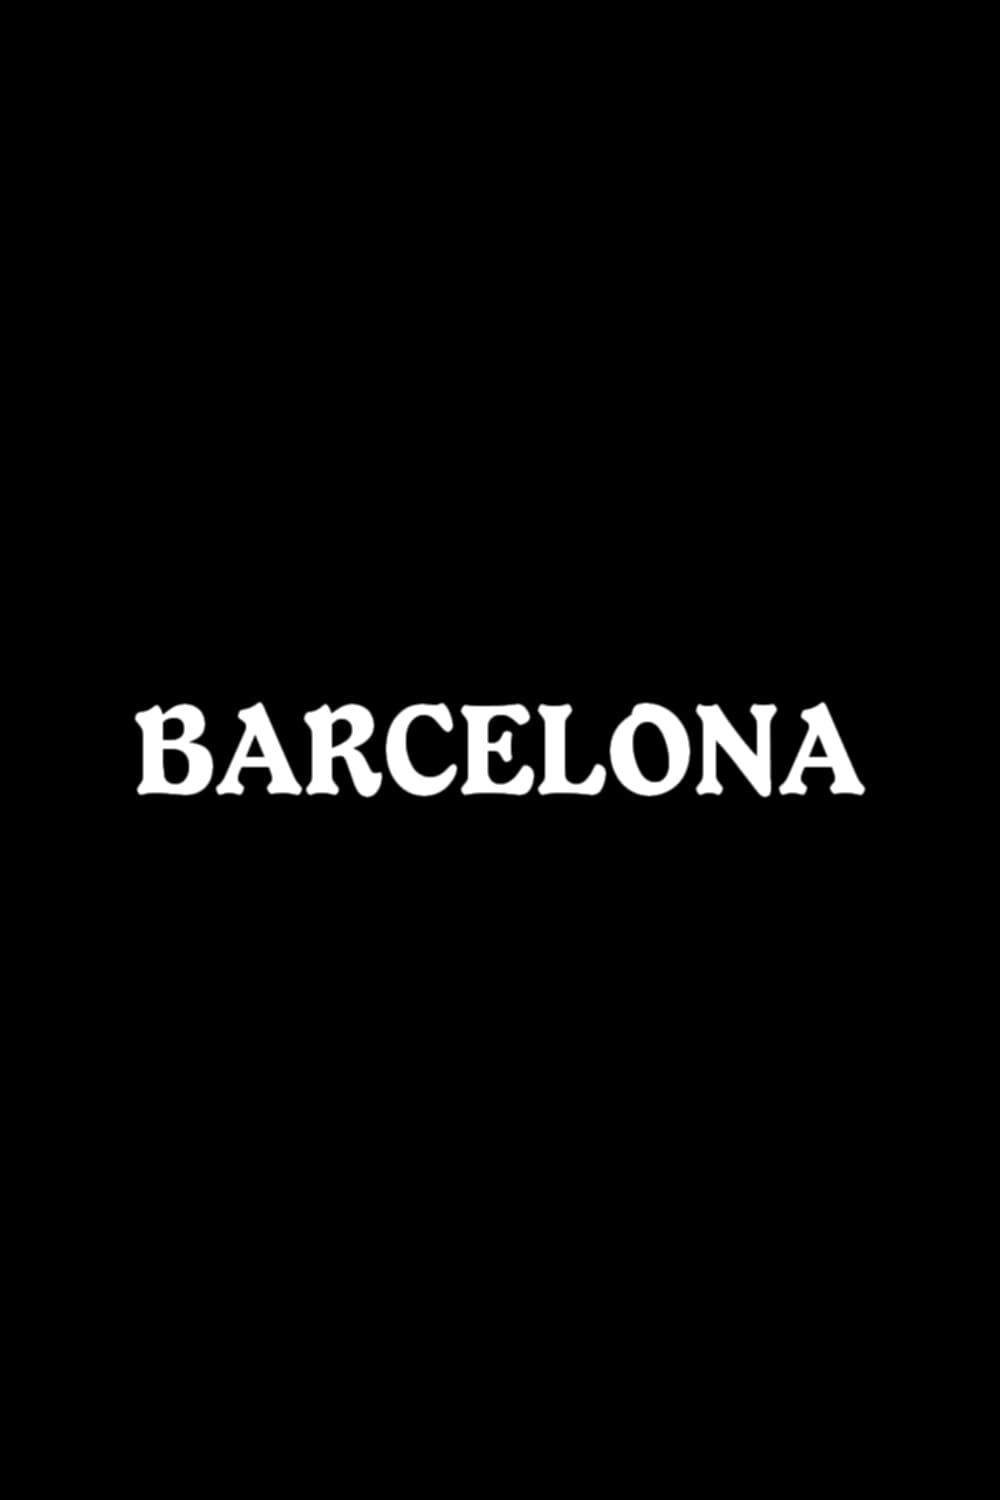 Barcelona poster